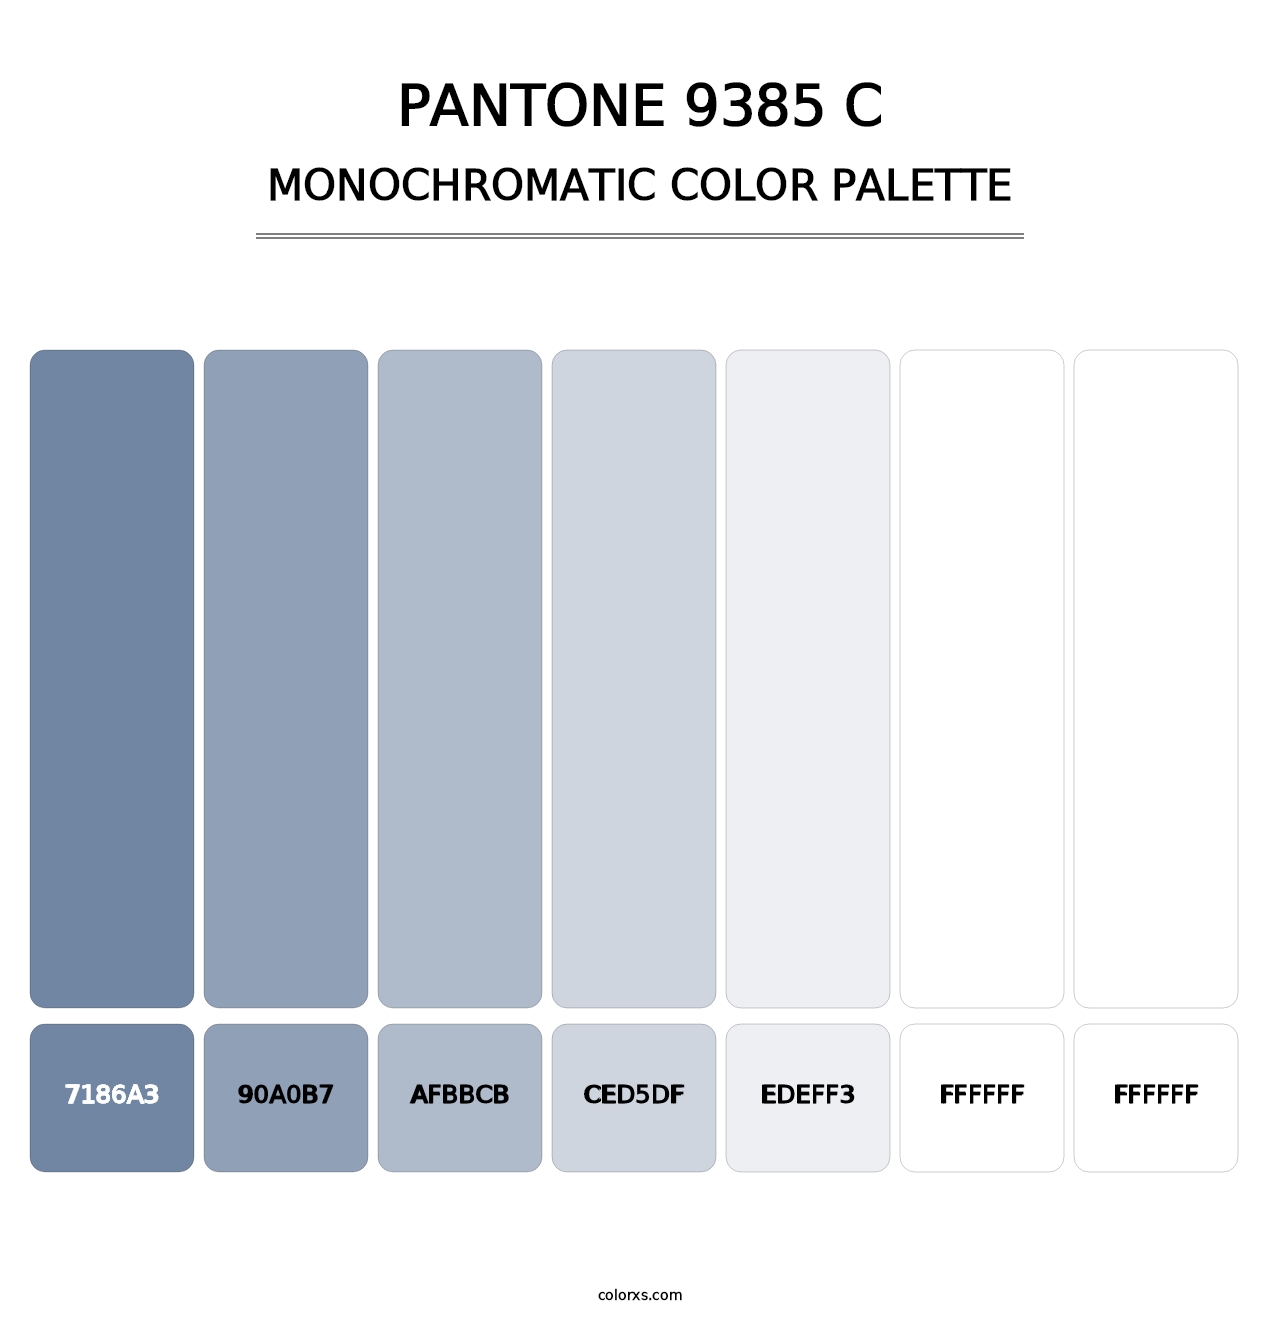 PANTONE 9385 C - Monochromatic Color Palette